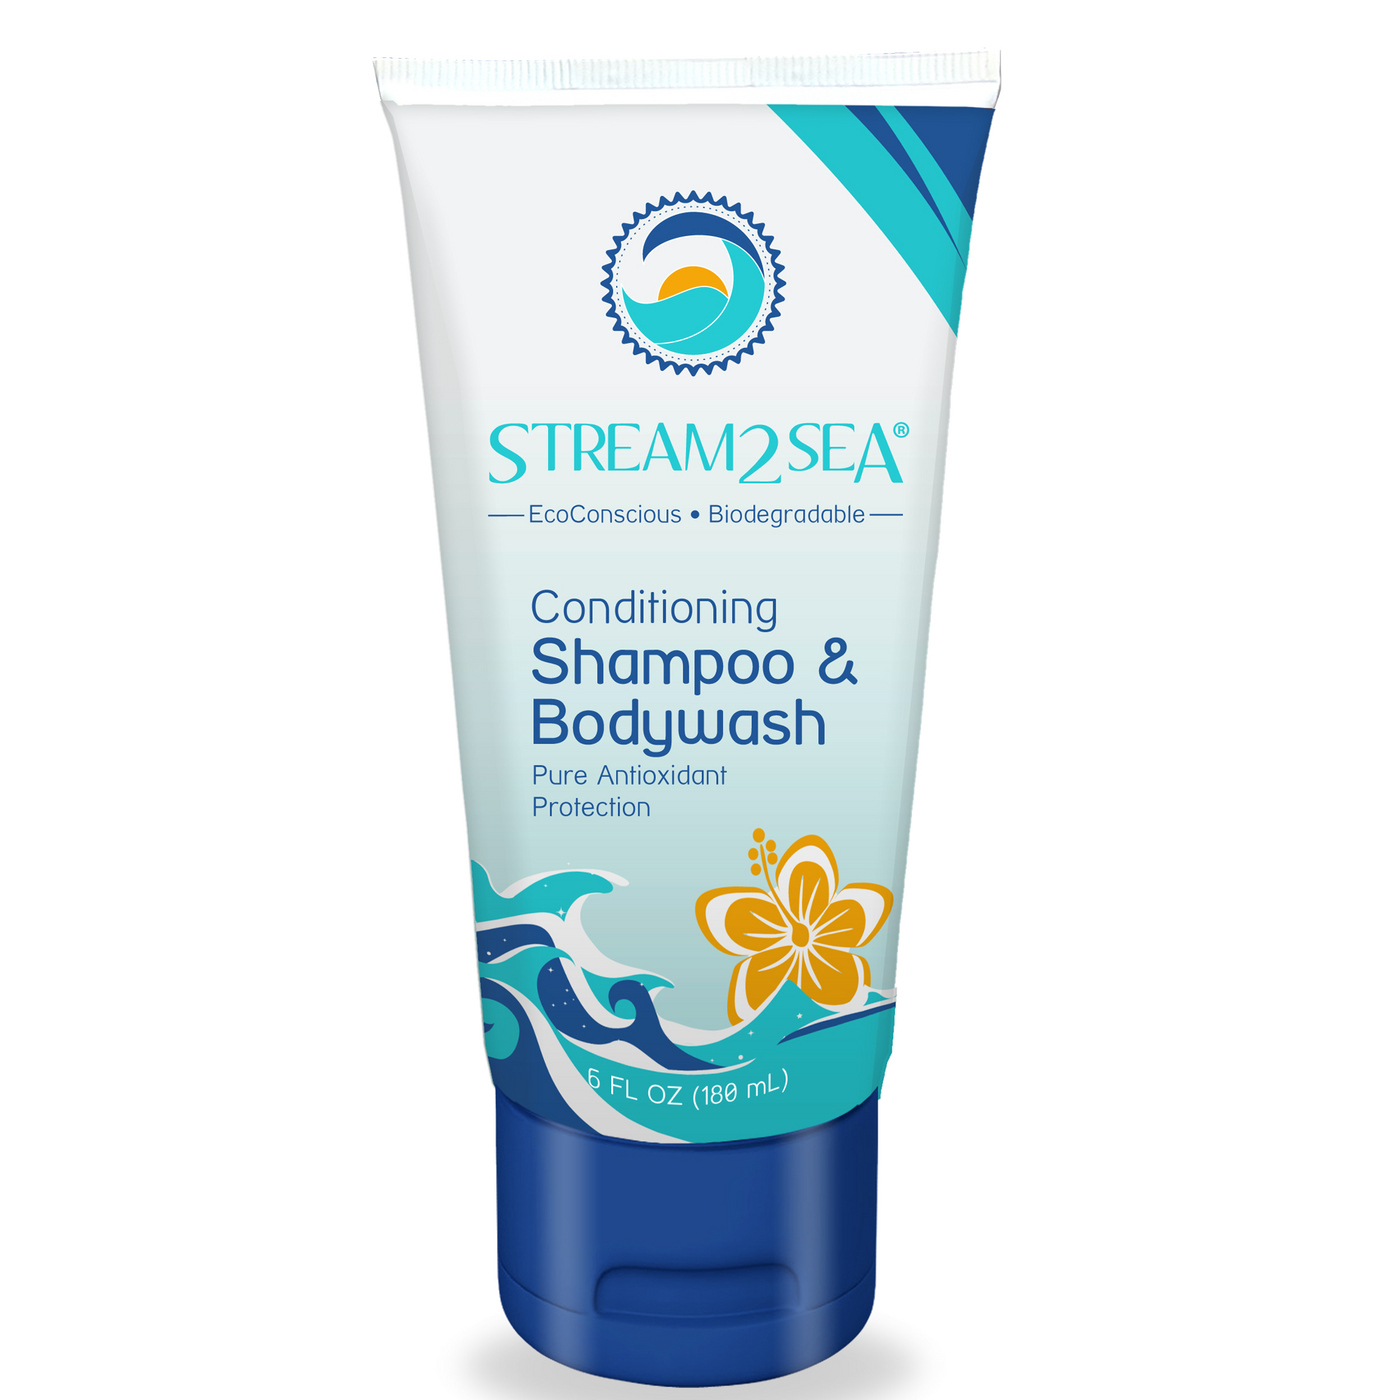 Conditioning Shampoo & Bodywash 6 fl oz Curated Wellness